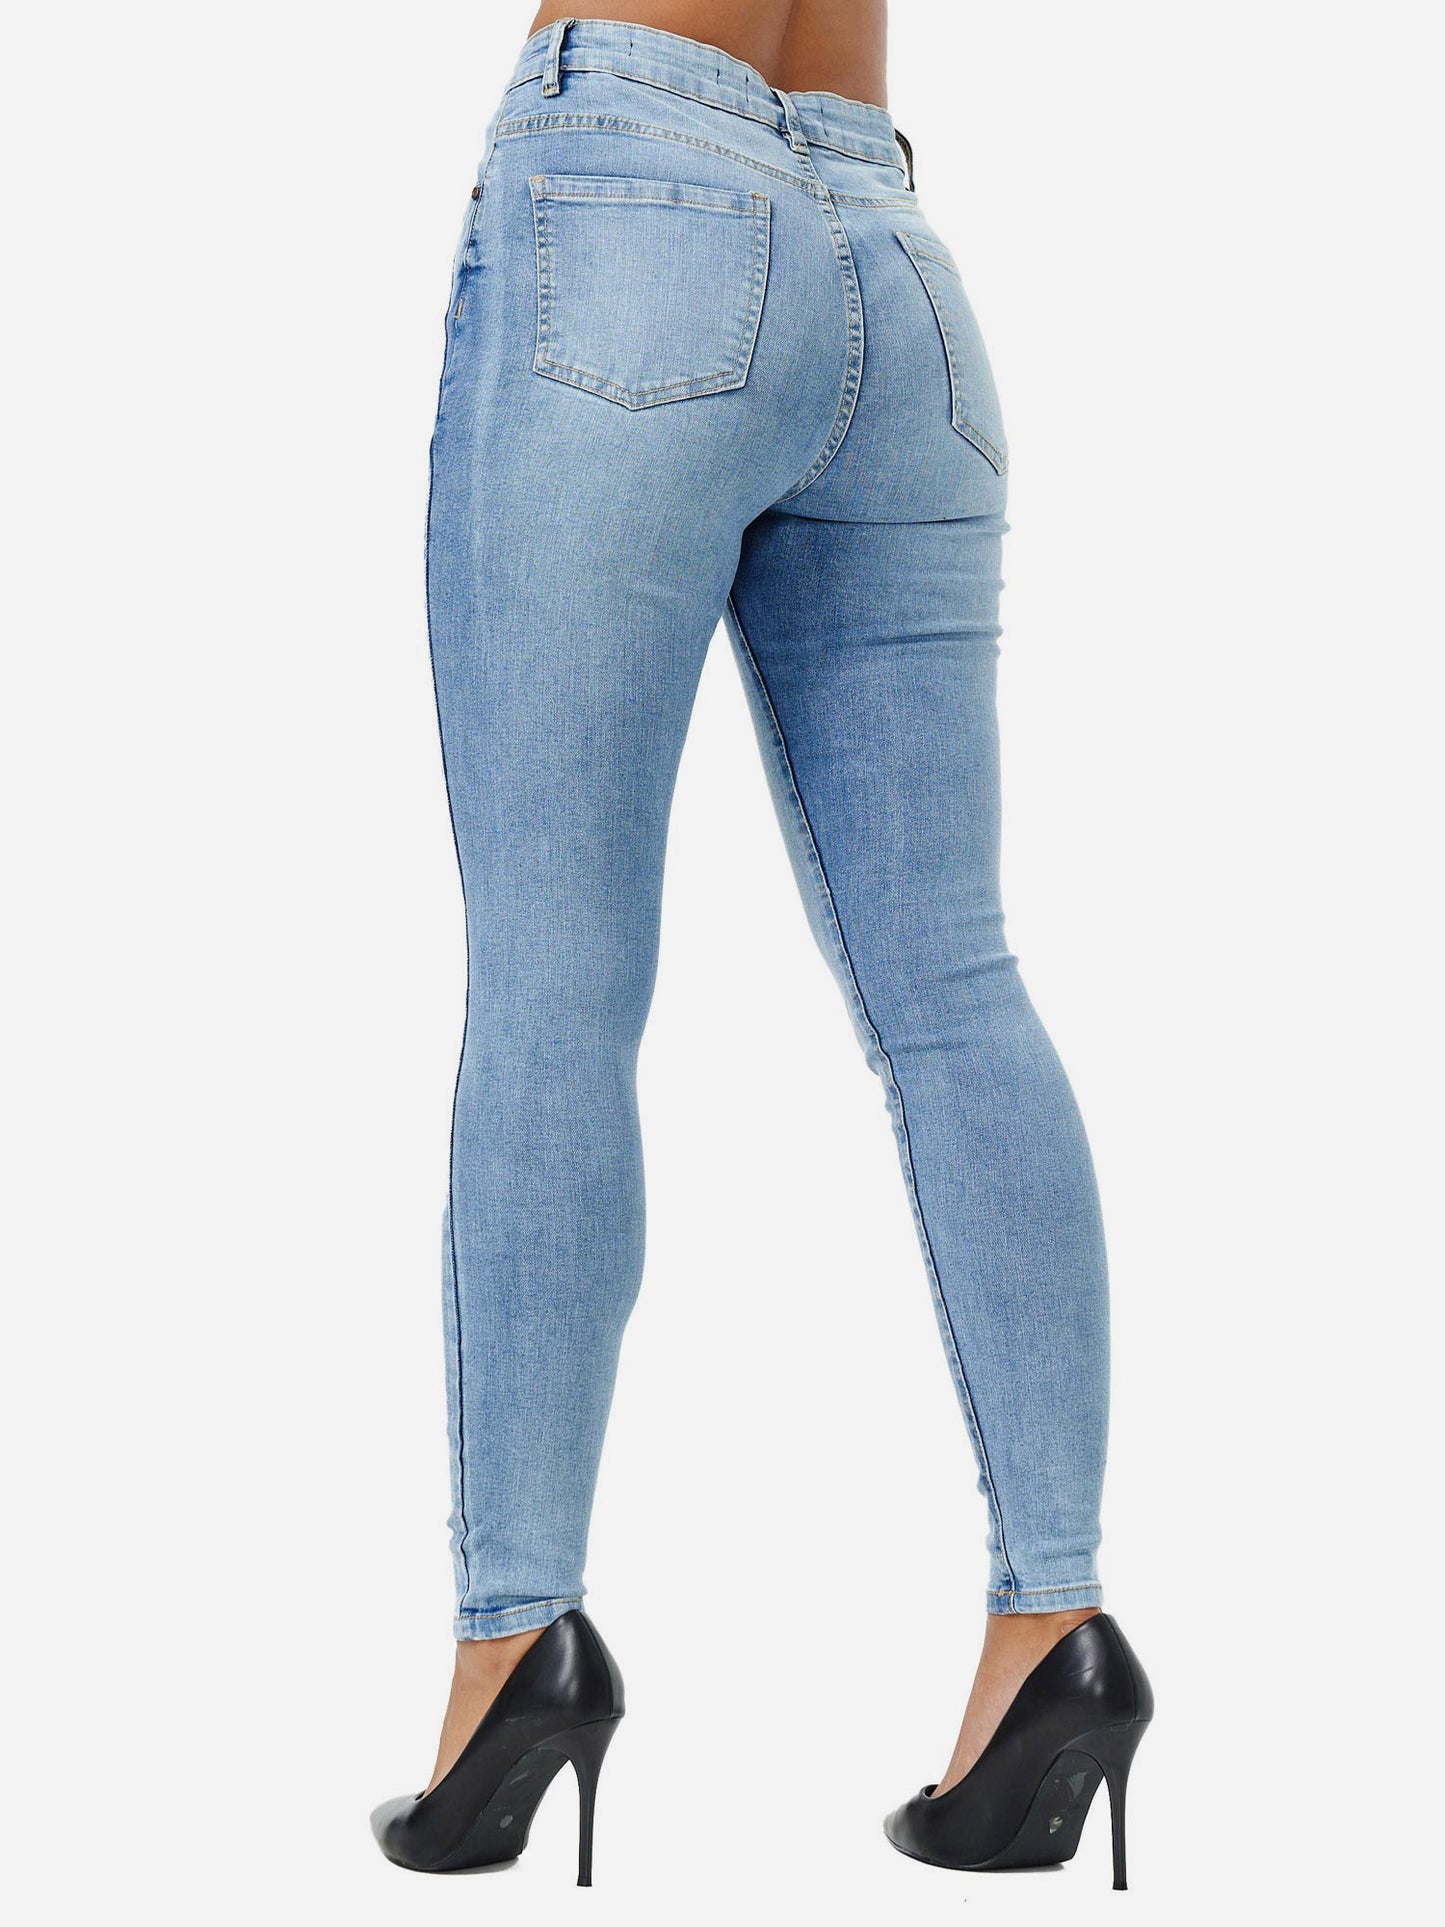 Tazzio Damen Skinny Fit High Waist Jeans F107